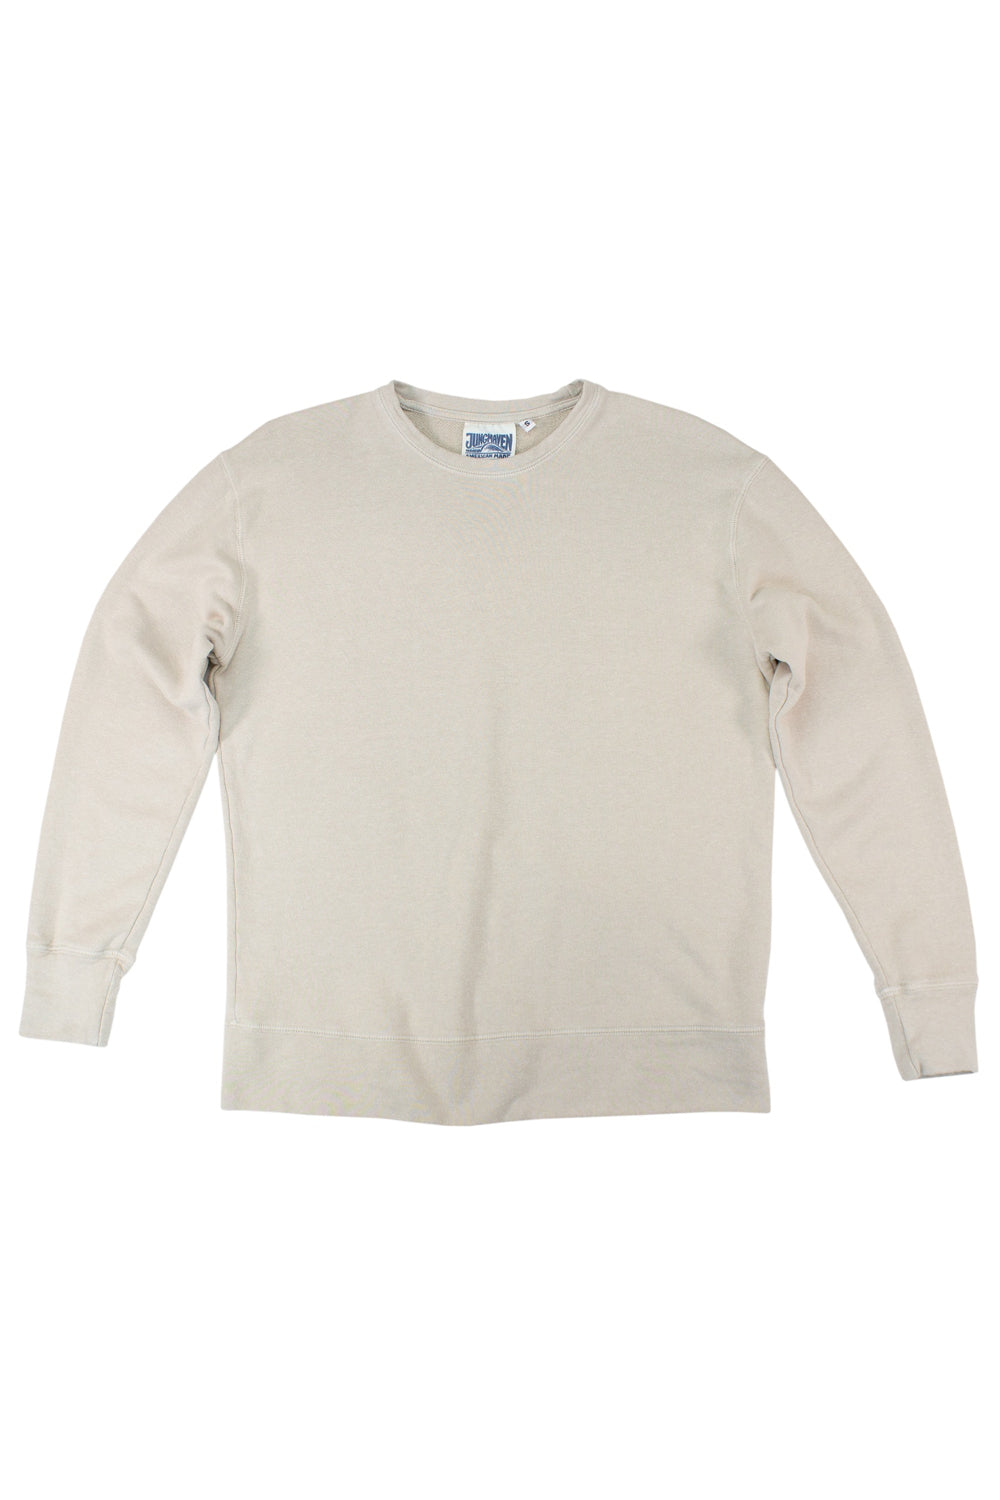 Tahoe Sweatshirt - Sale Colors | Jungmaven Hemp Clothing & Accessories / Color: Canvas